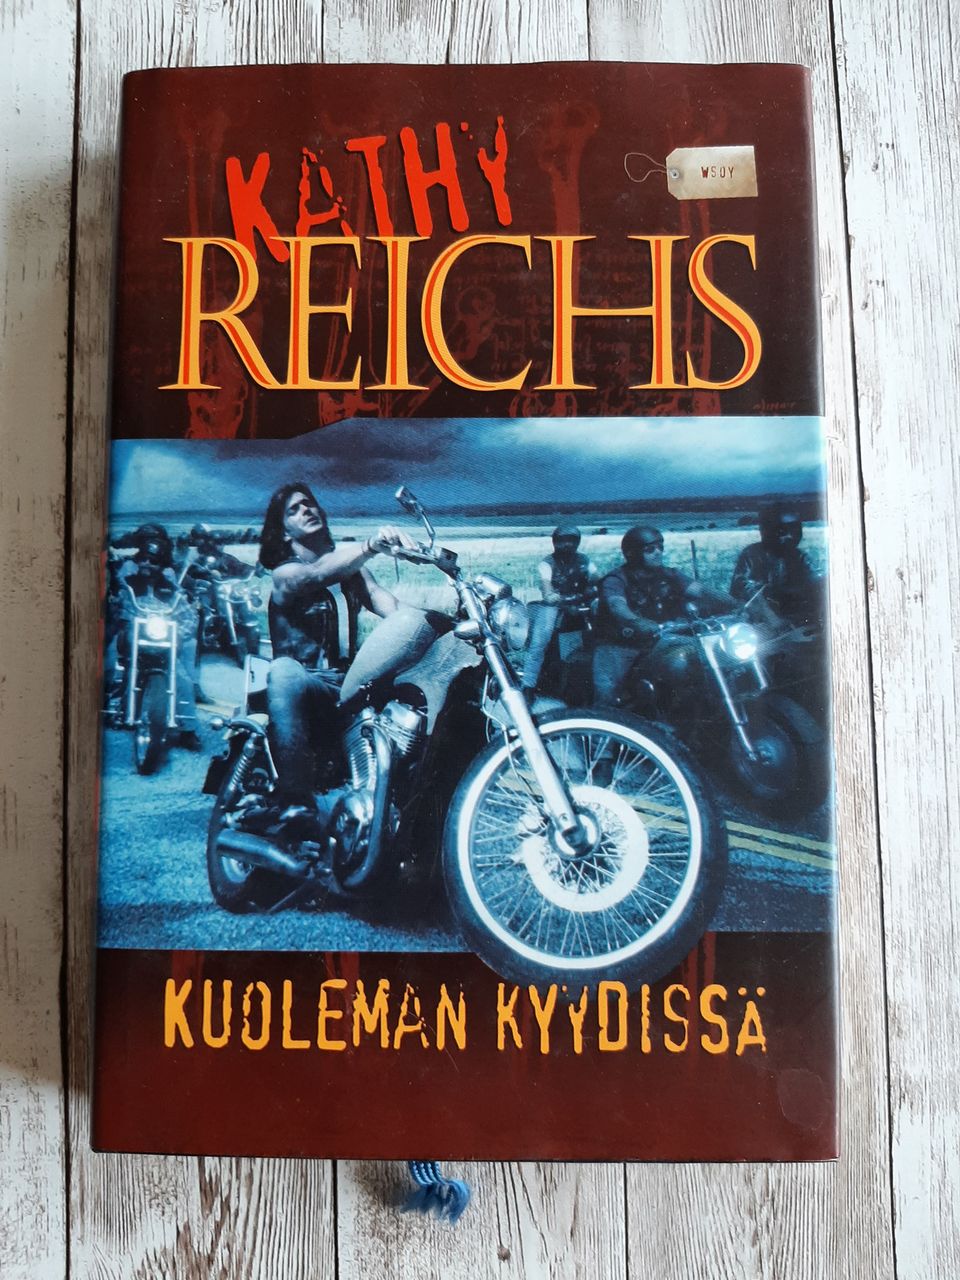 Kirja:Kathy Reichs: Kuoleman kyydissä